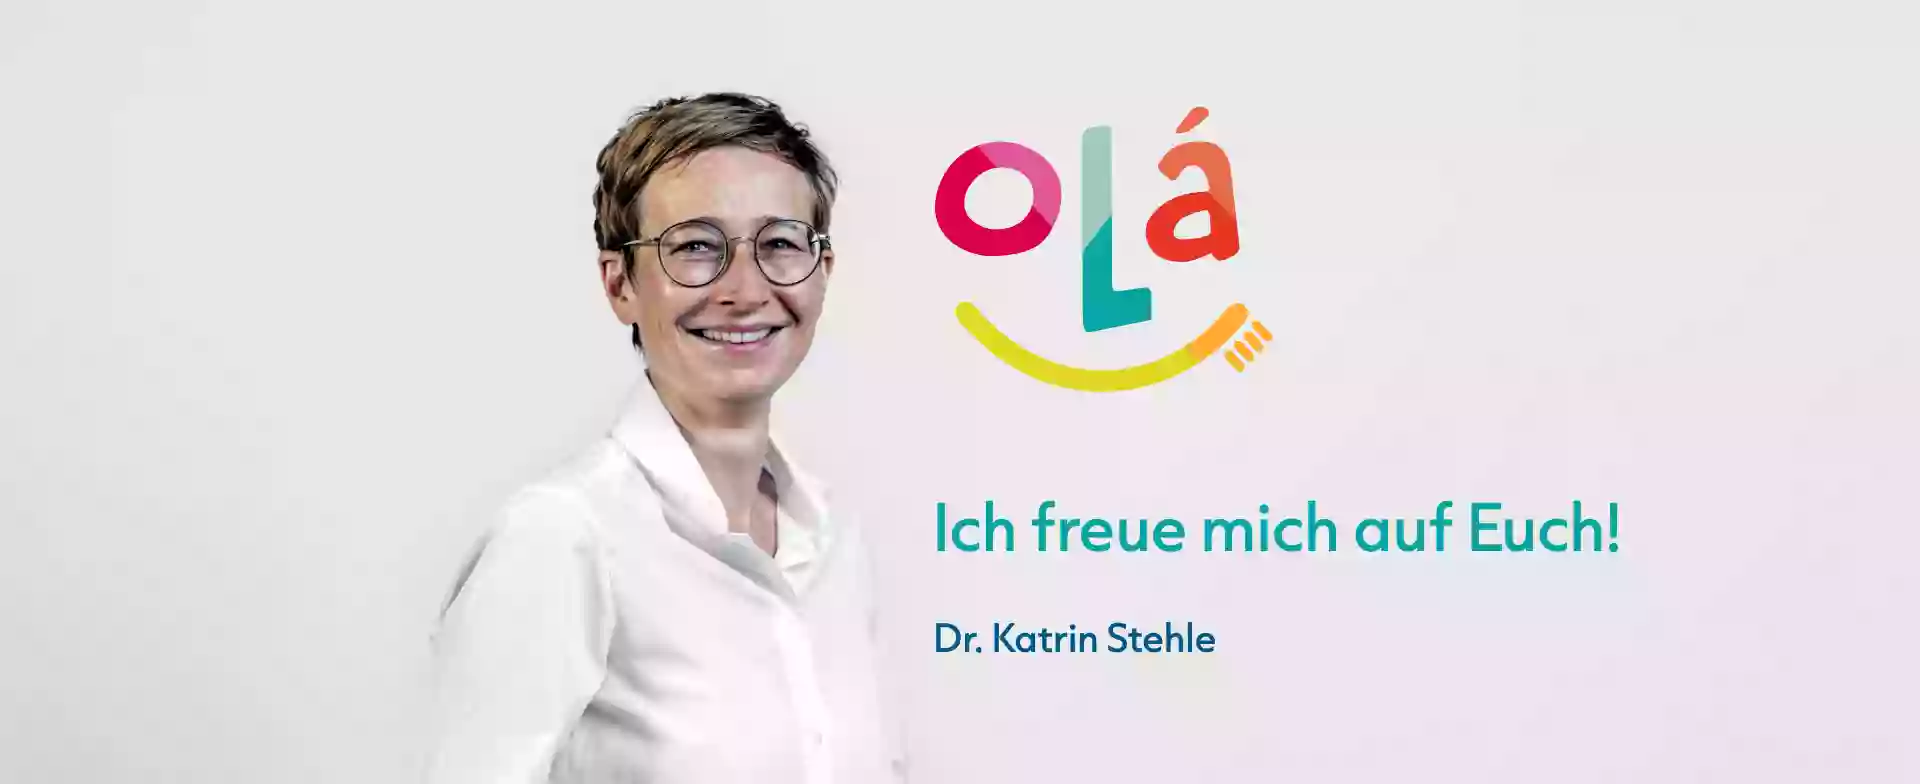 Olá Kinderzahnarztpraxis Dr. Katrin Stehle